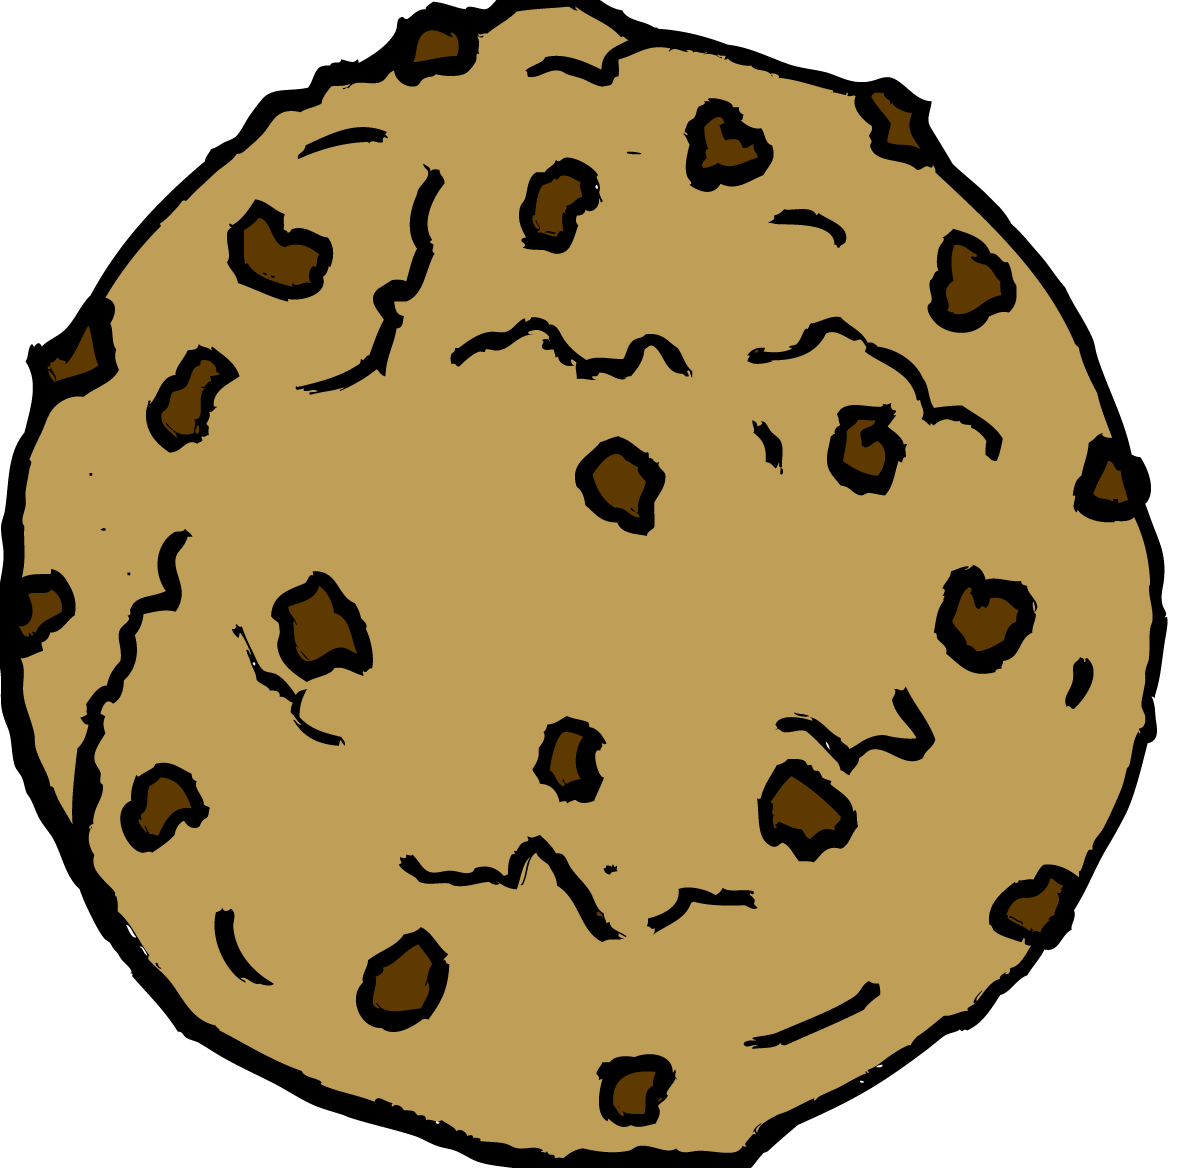 cookie clipart plain